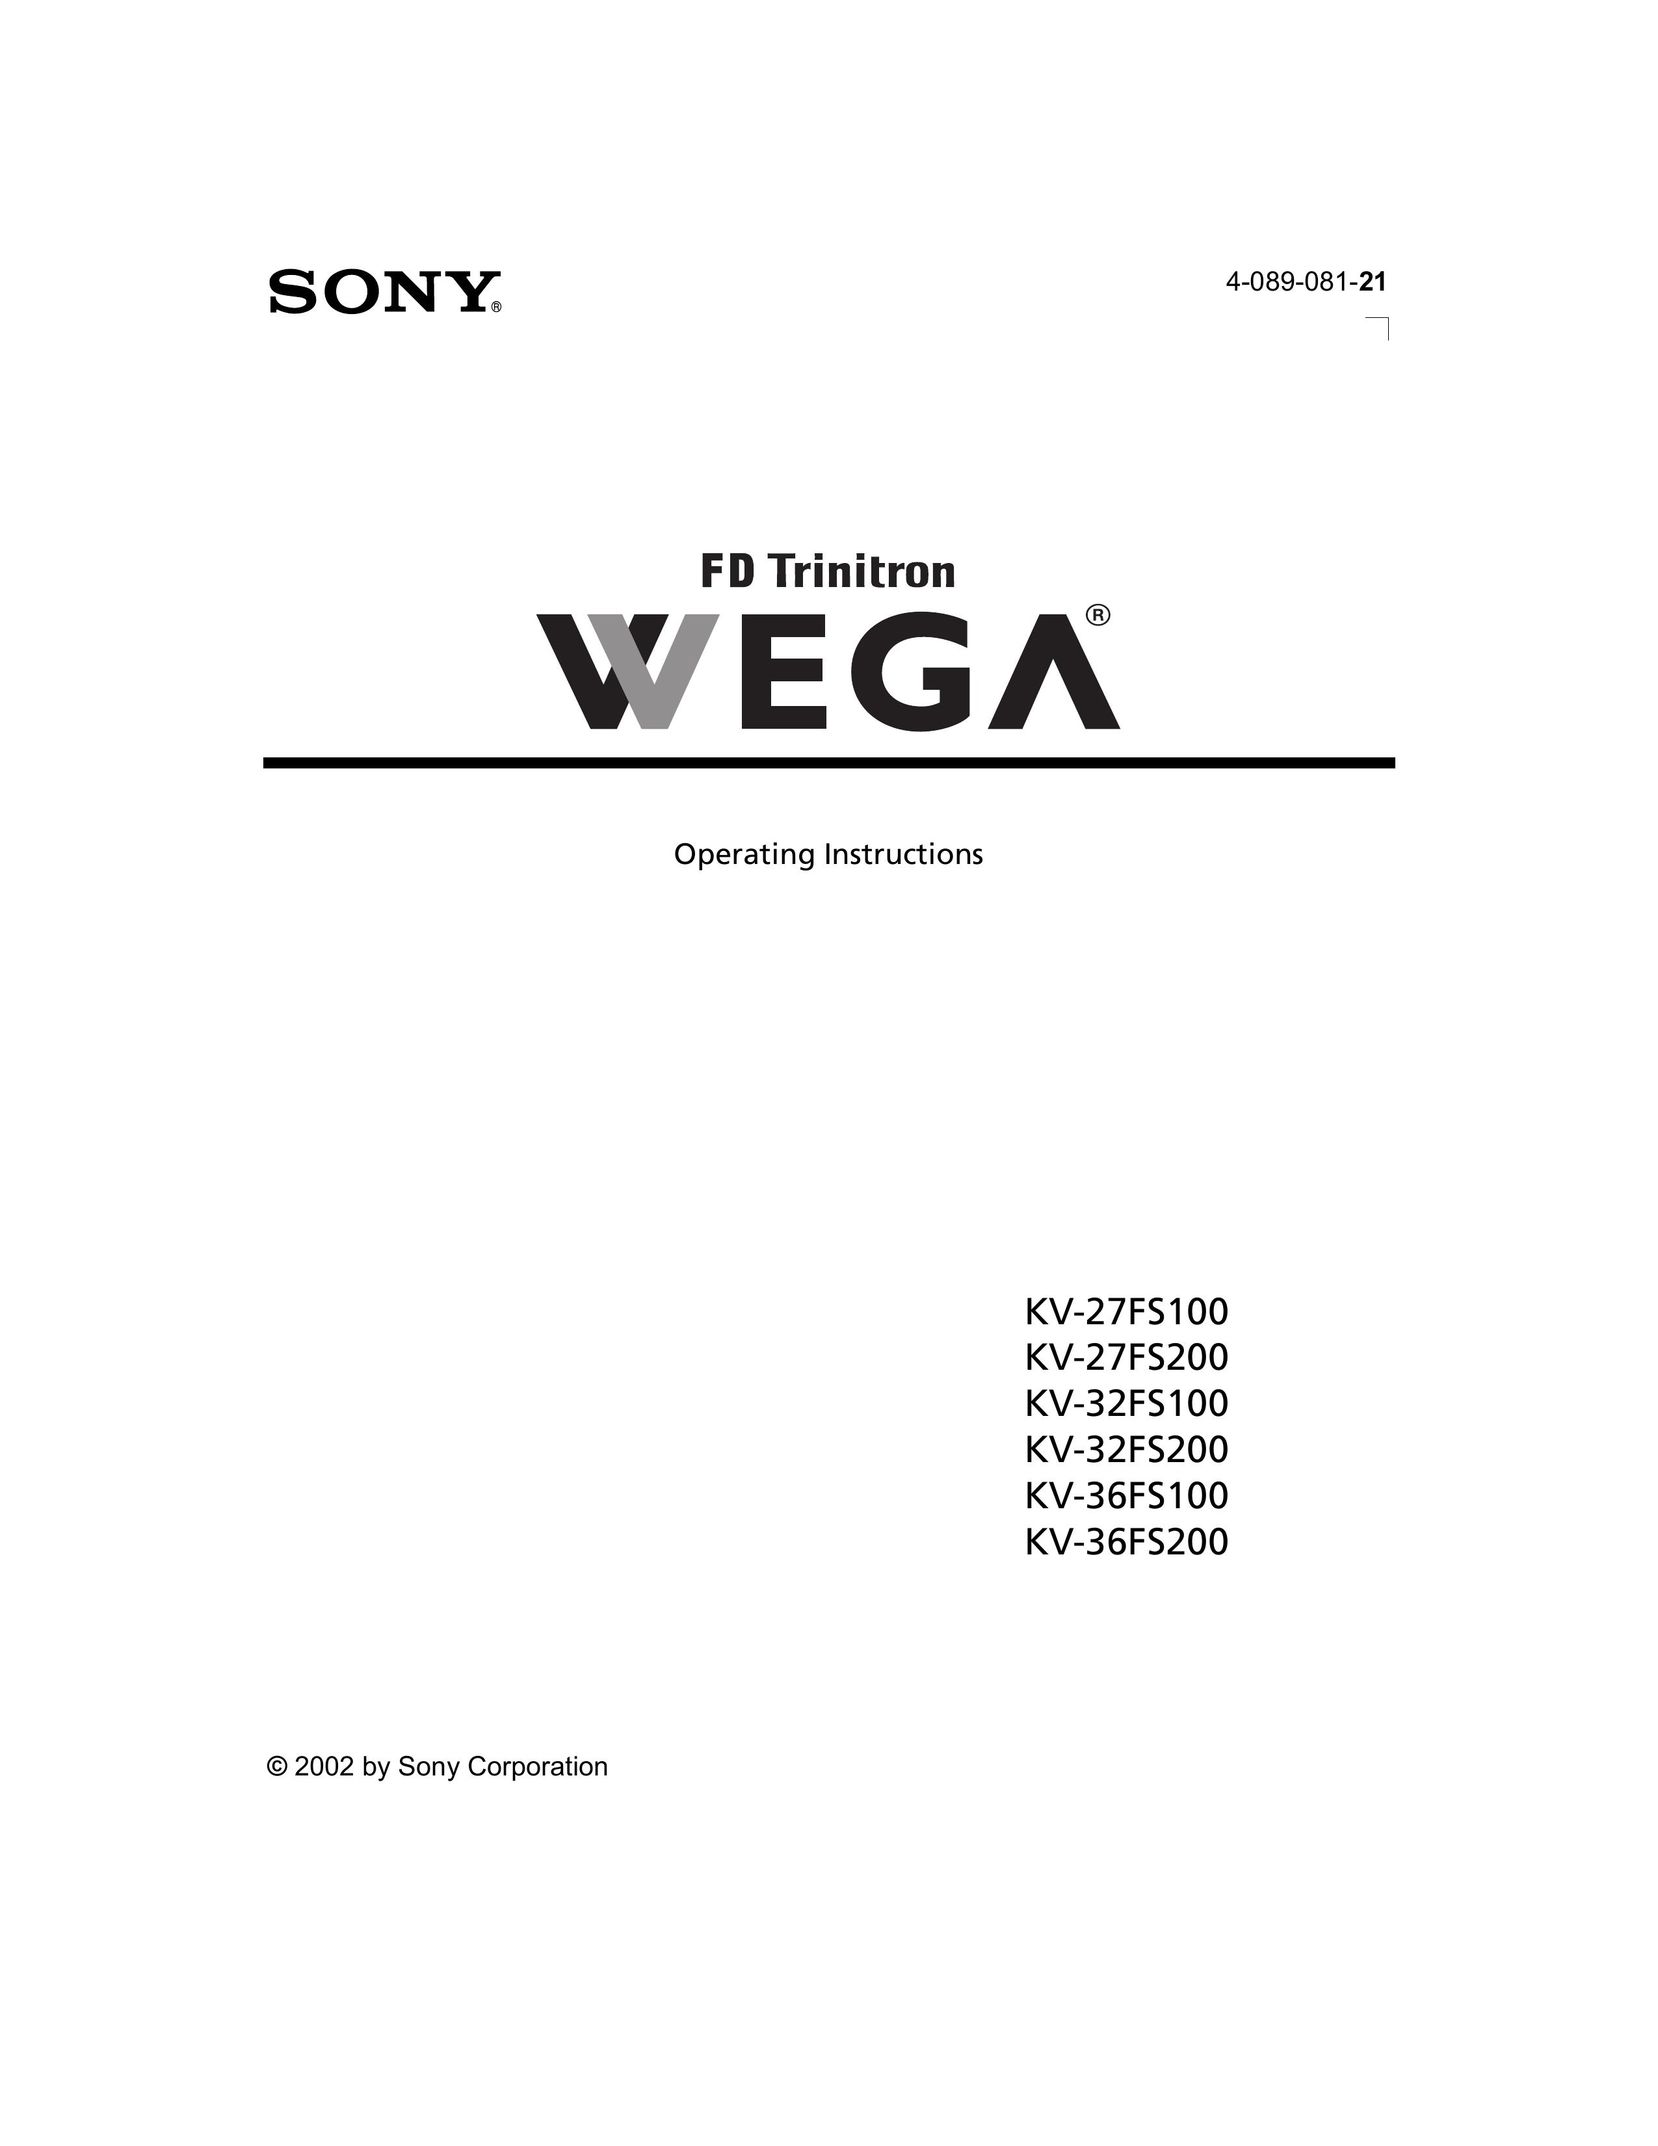 Sony KV-27FS200 Car Satellite TV System User Manual